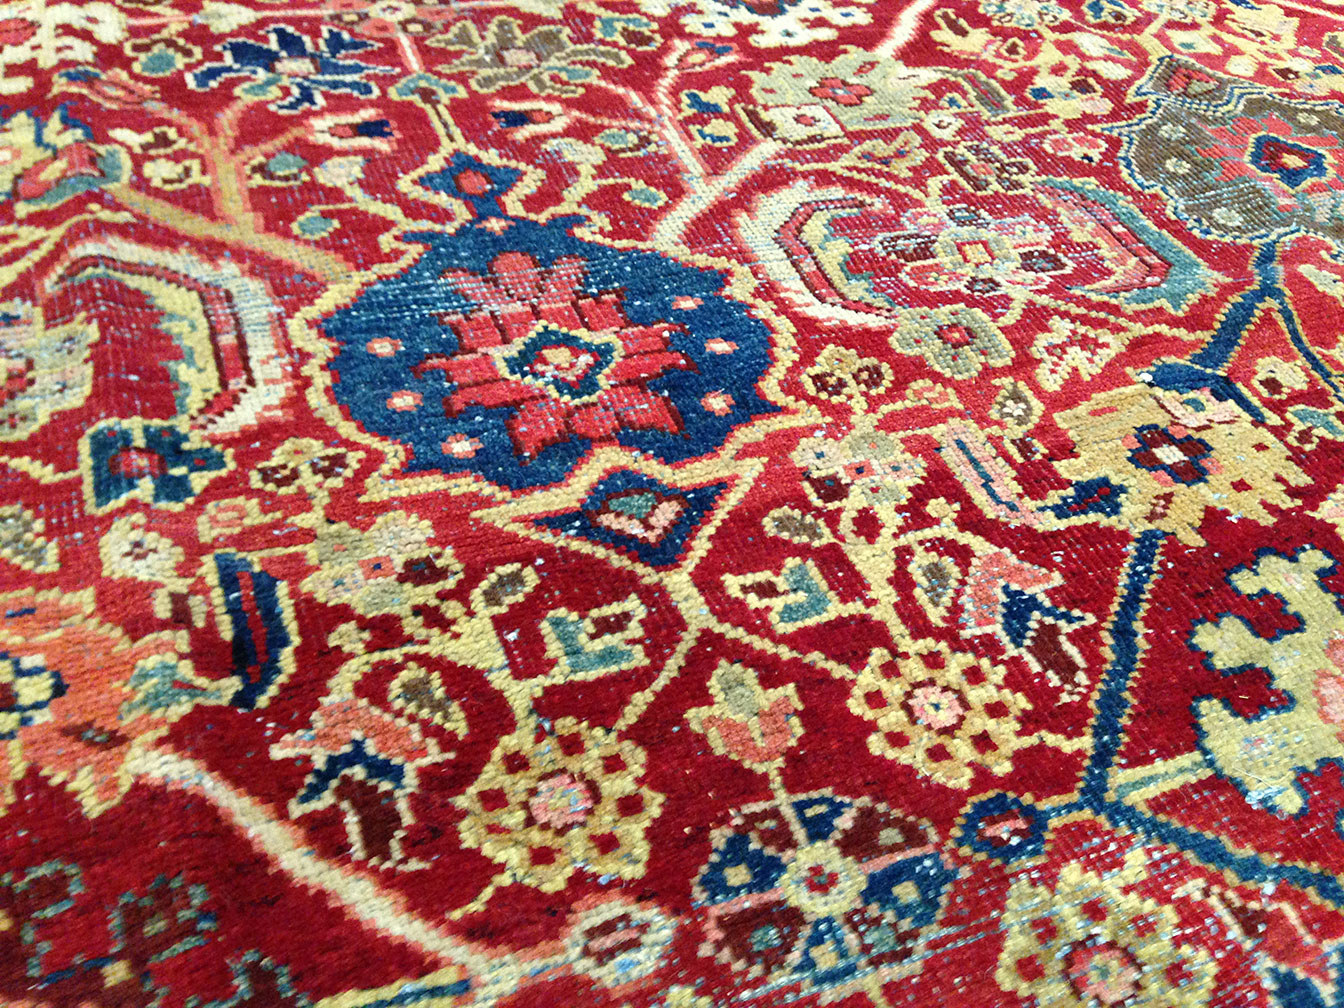 Antique mahal Carpet - # 9898